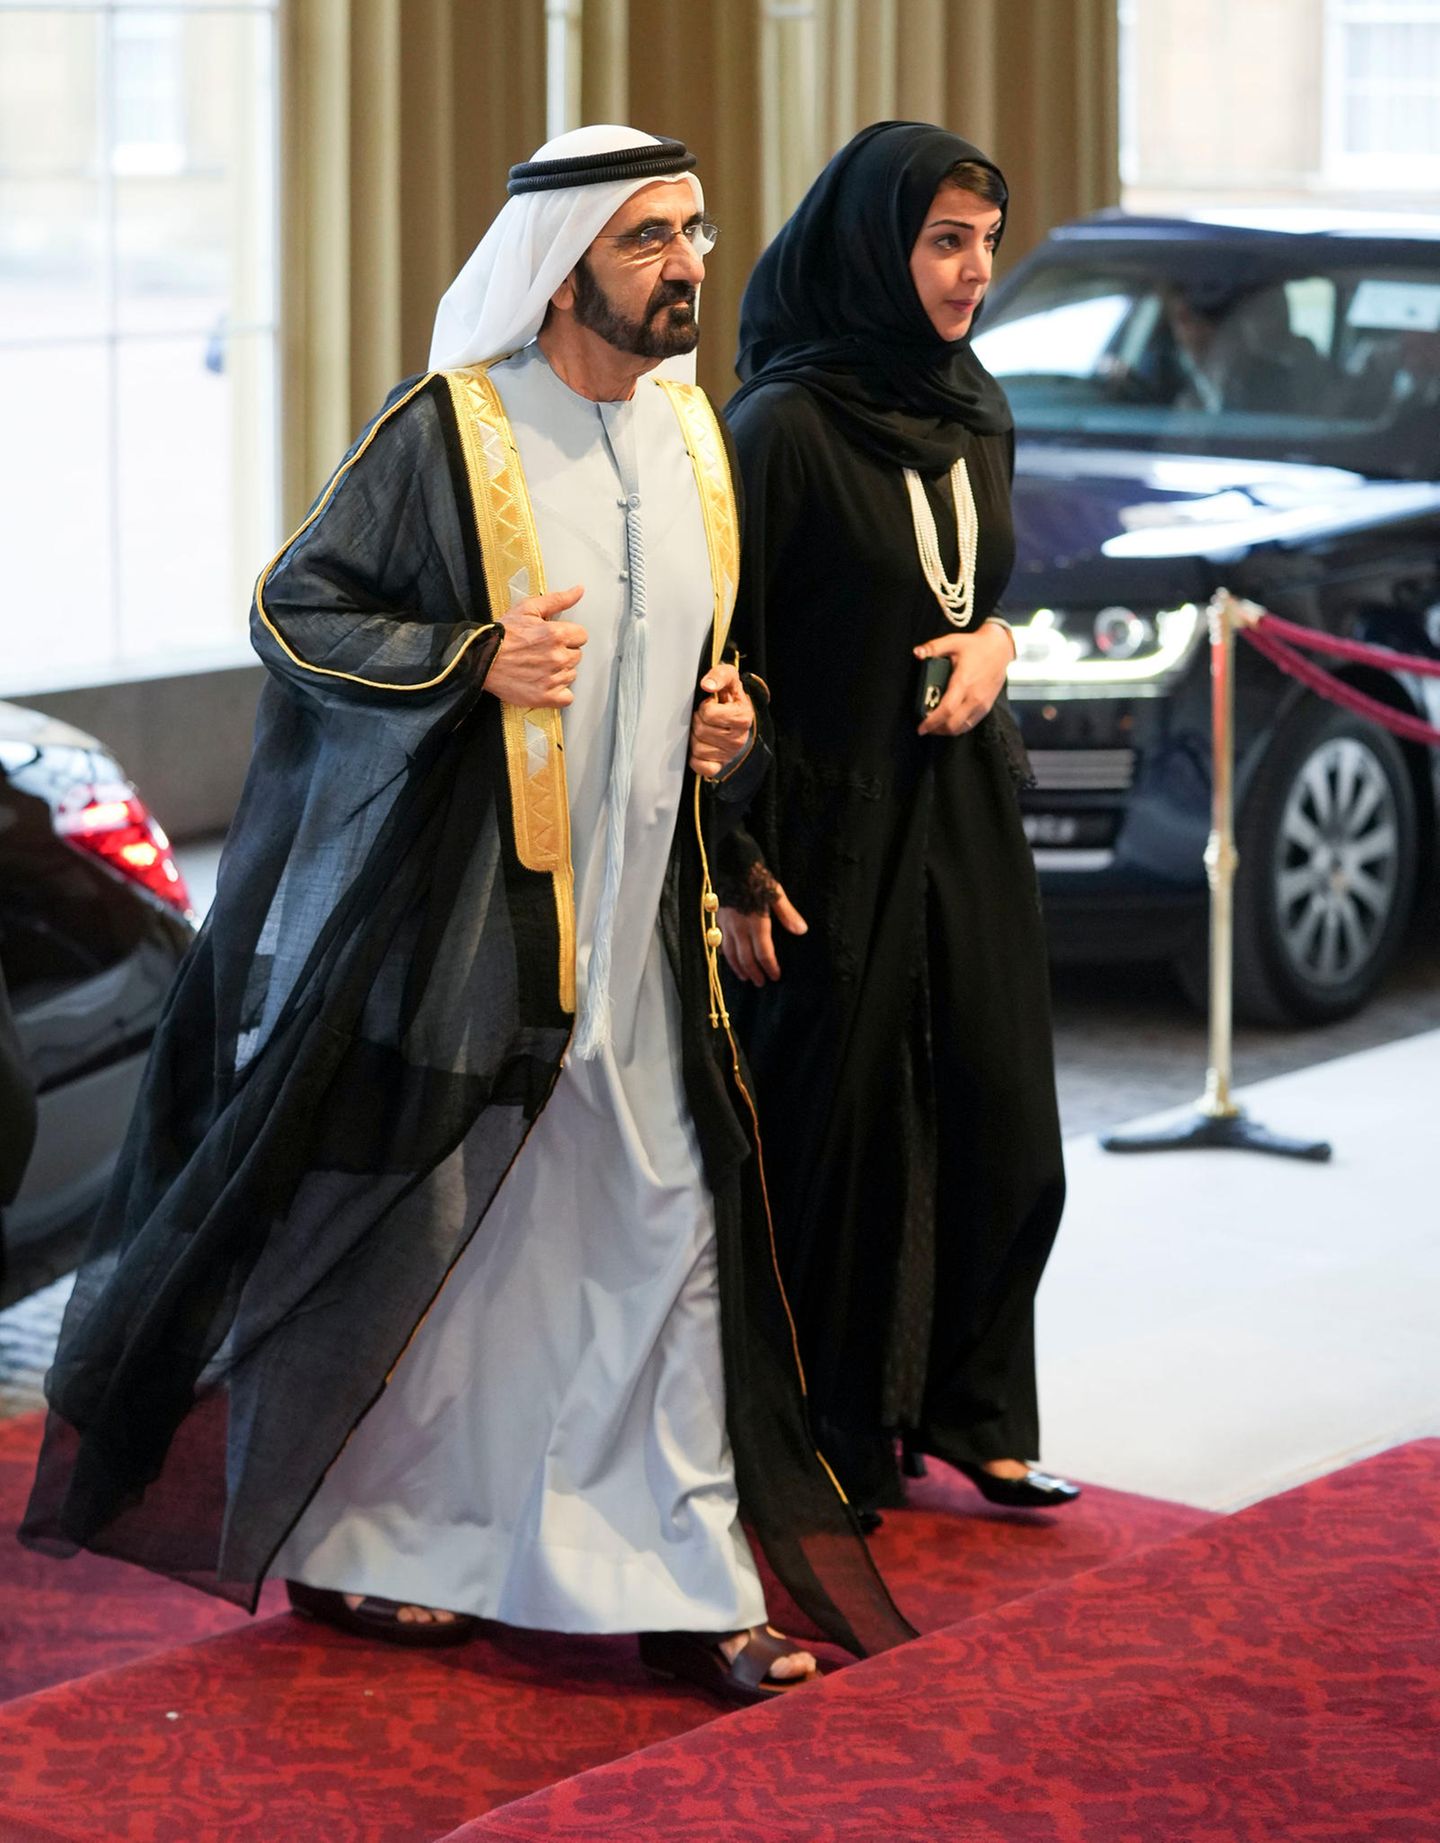 Sheikh Mohammed bin Rashid Al Maktoum kommt ebenfalls zum Empfang von König Charles III. im Buckingham Palast.